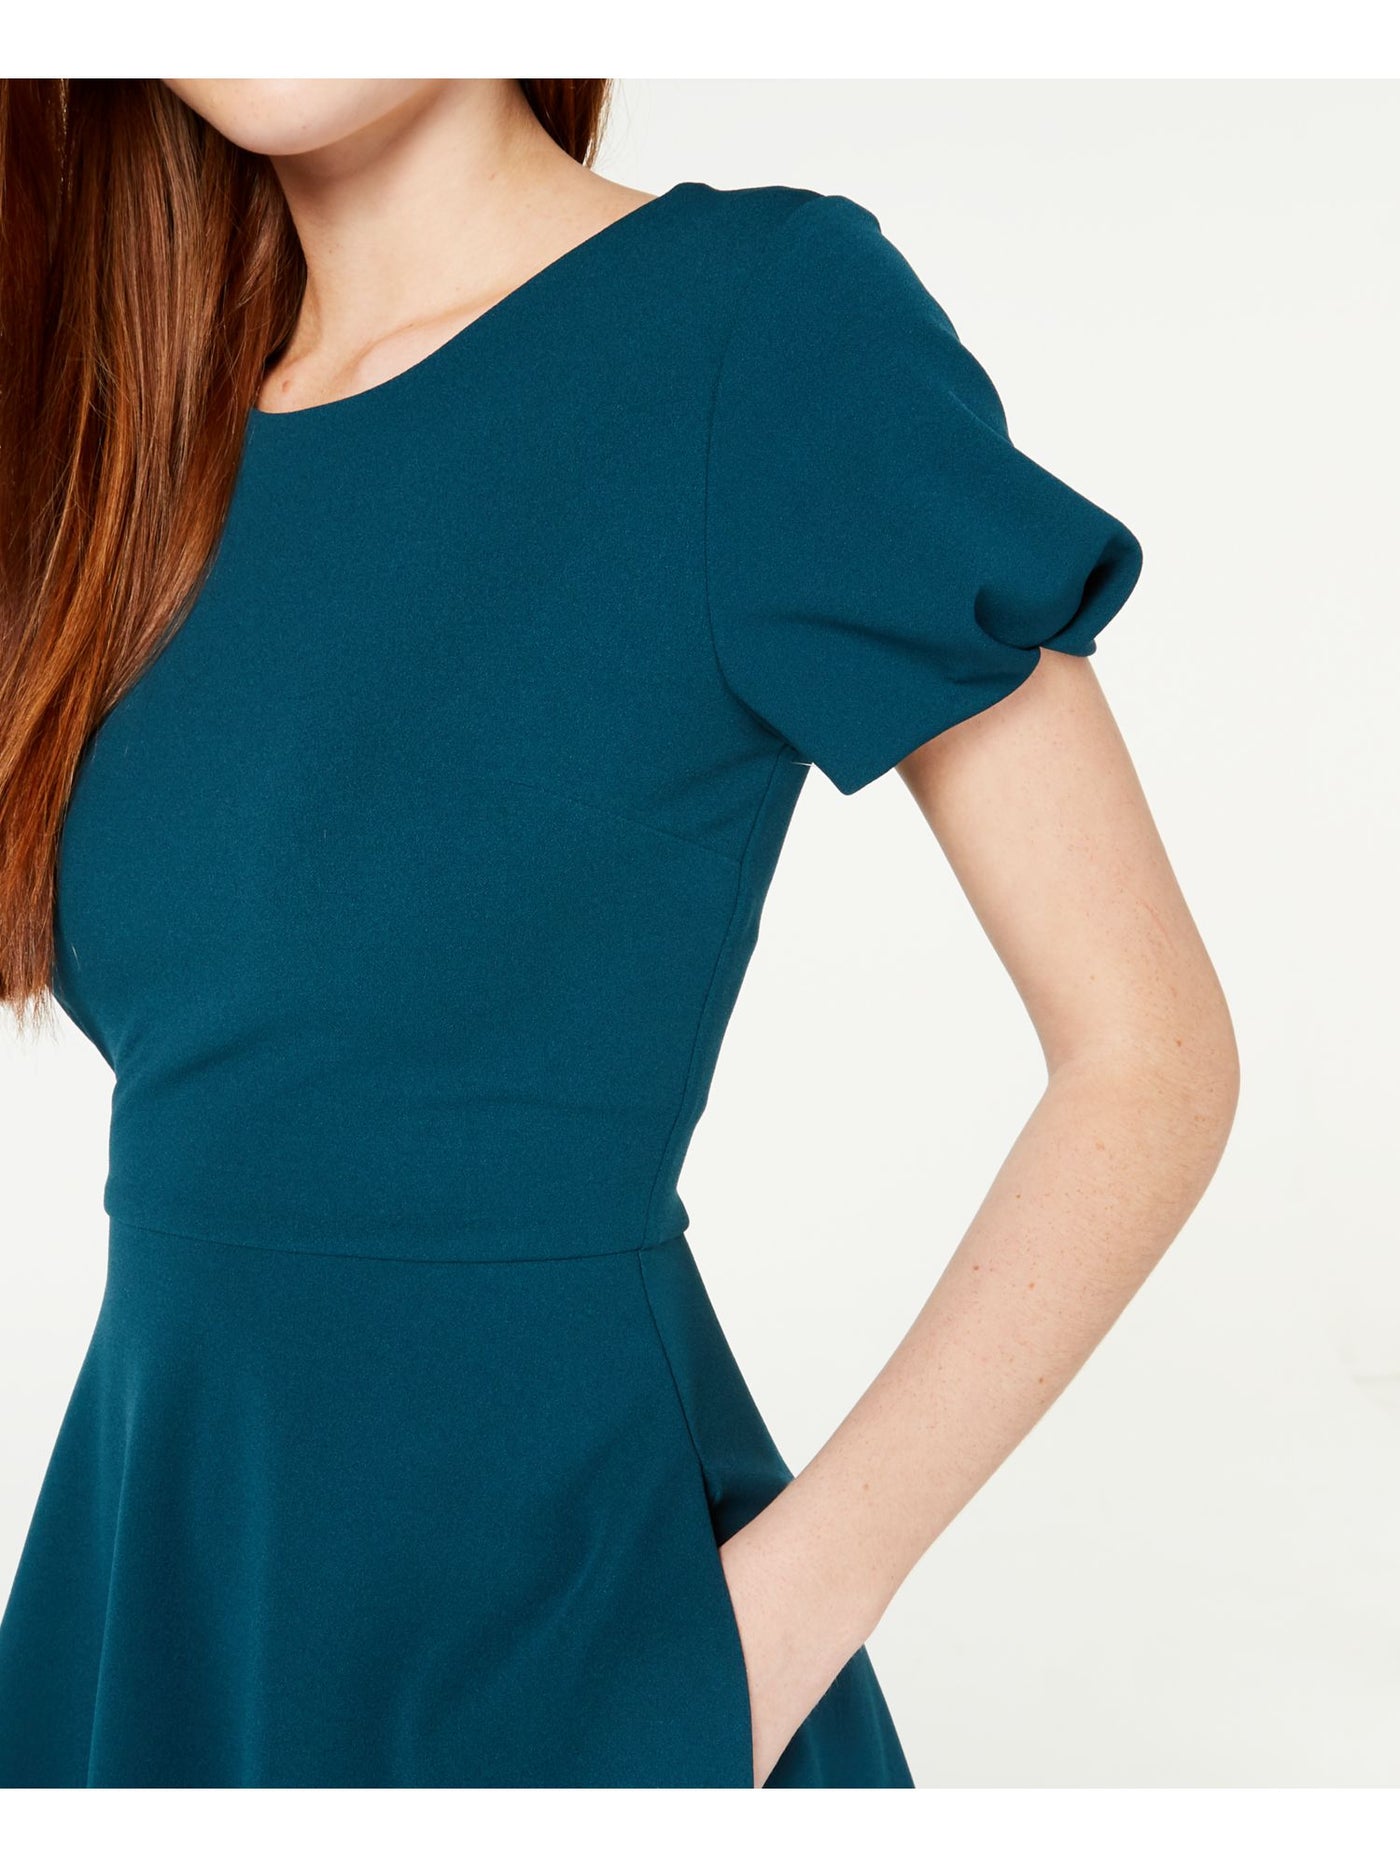 SPEECHLESS Womens Green Petal Sleeve Jewel Neck Mini Fit + Flare Dress Juniors XS